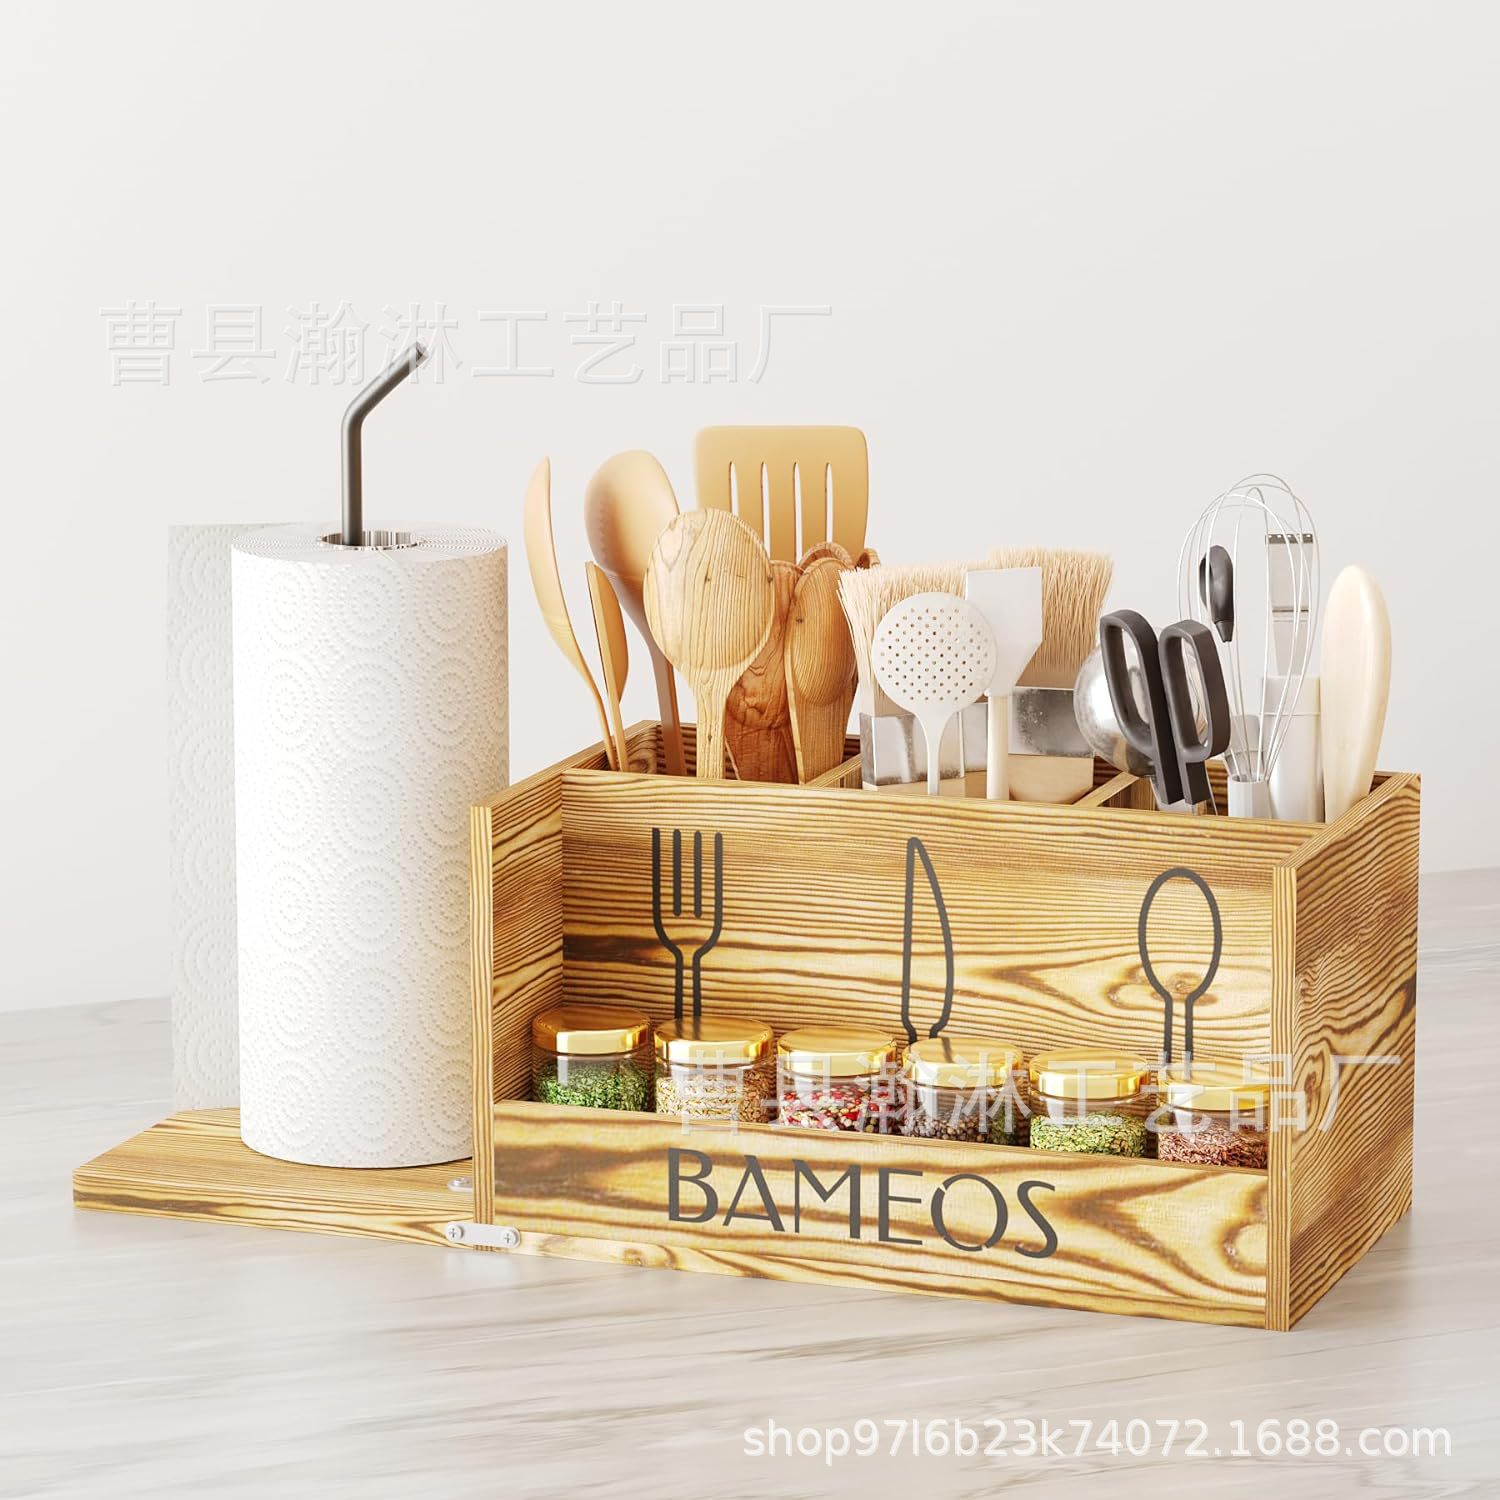 厨房柜台木制餐具整理架桌面调料餐巾纸收纳架可悬挂多格刀叉架